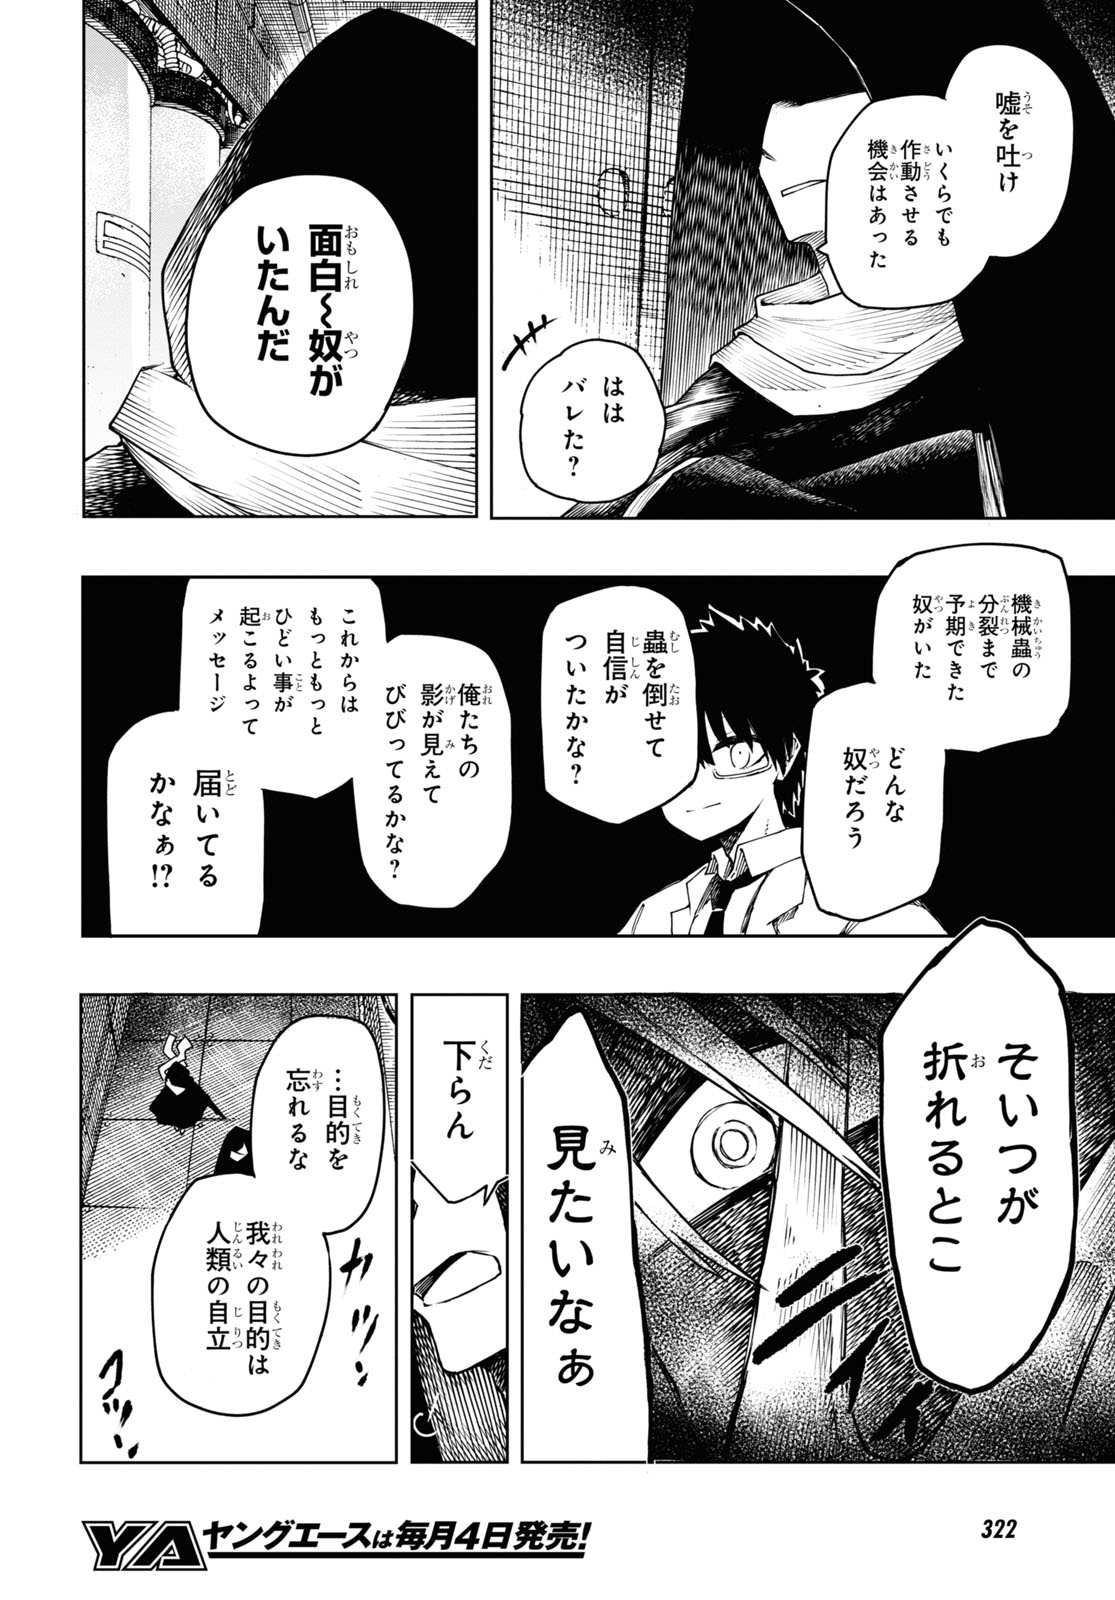 Shinjuu no Shittoui - Chapter 7.2 - Page 27